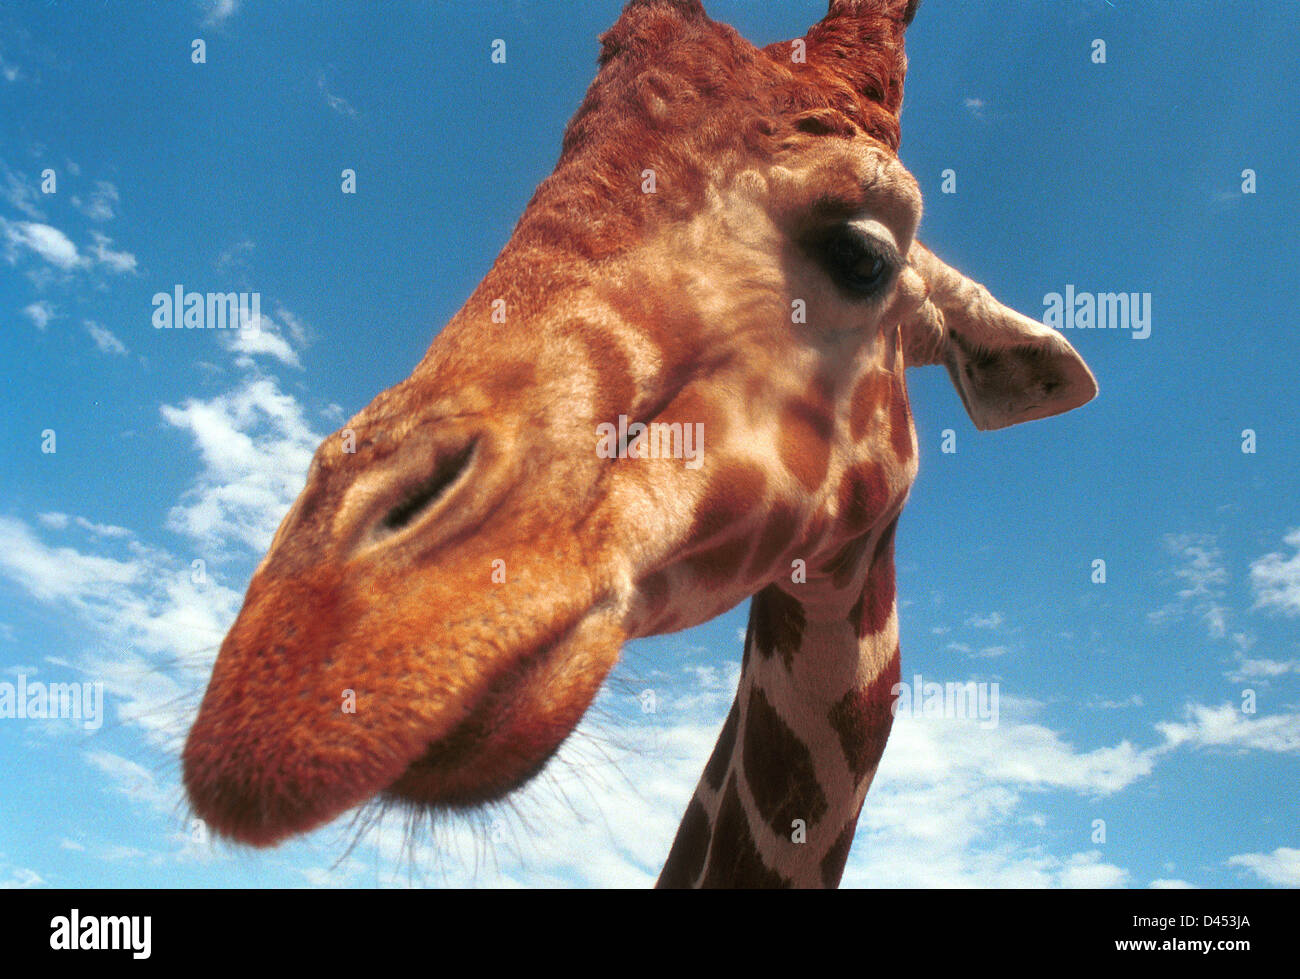 Jirafa incluso-africana de mamíferos ungulados vetado la vida animal terrestre más alto y más grande de rumiantes, Giraffa Camelopardalis, Foto de stock